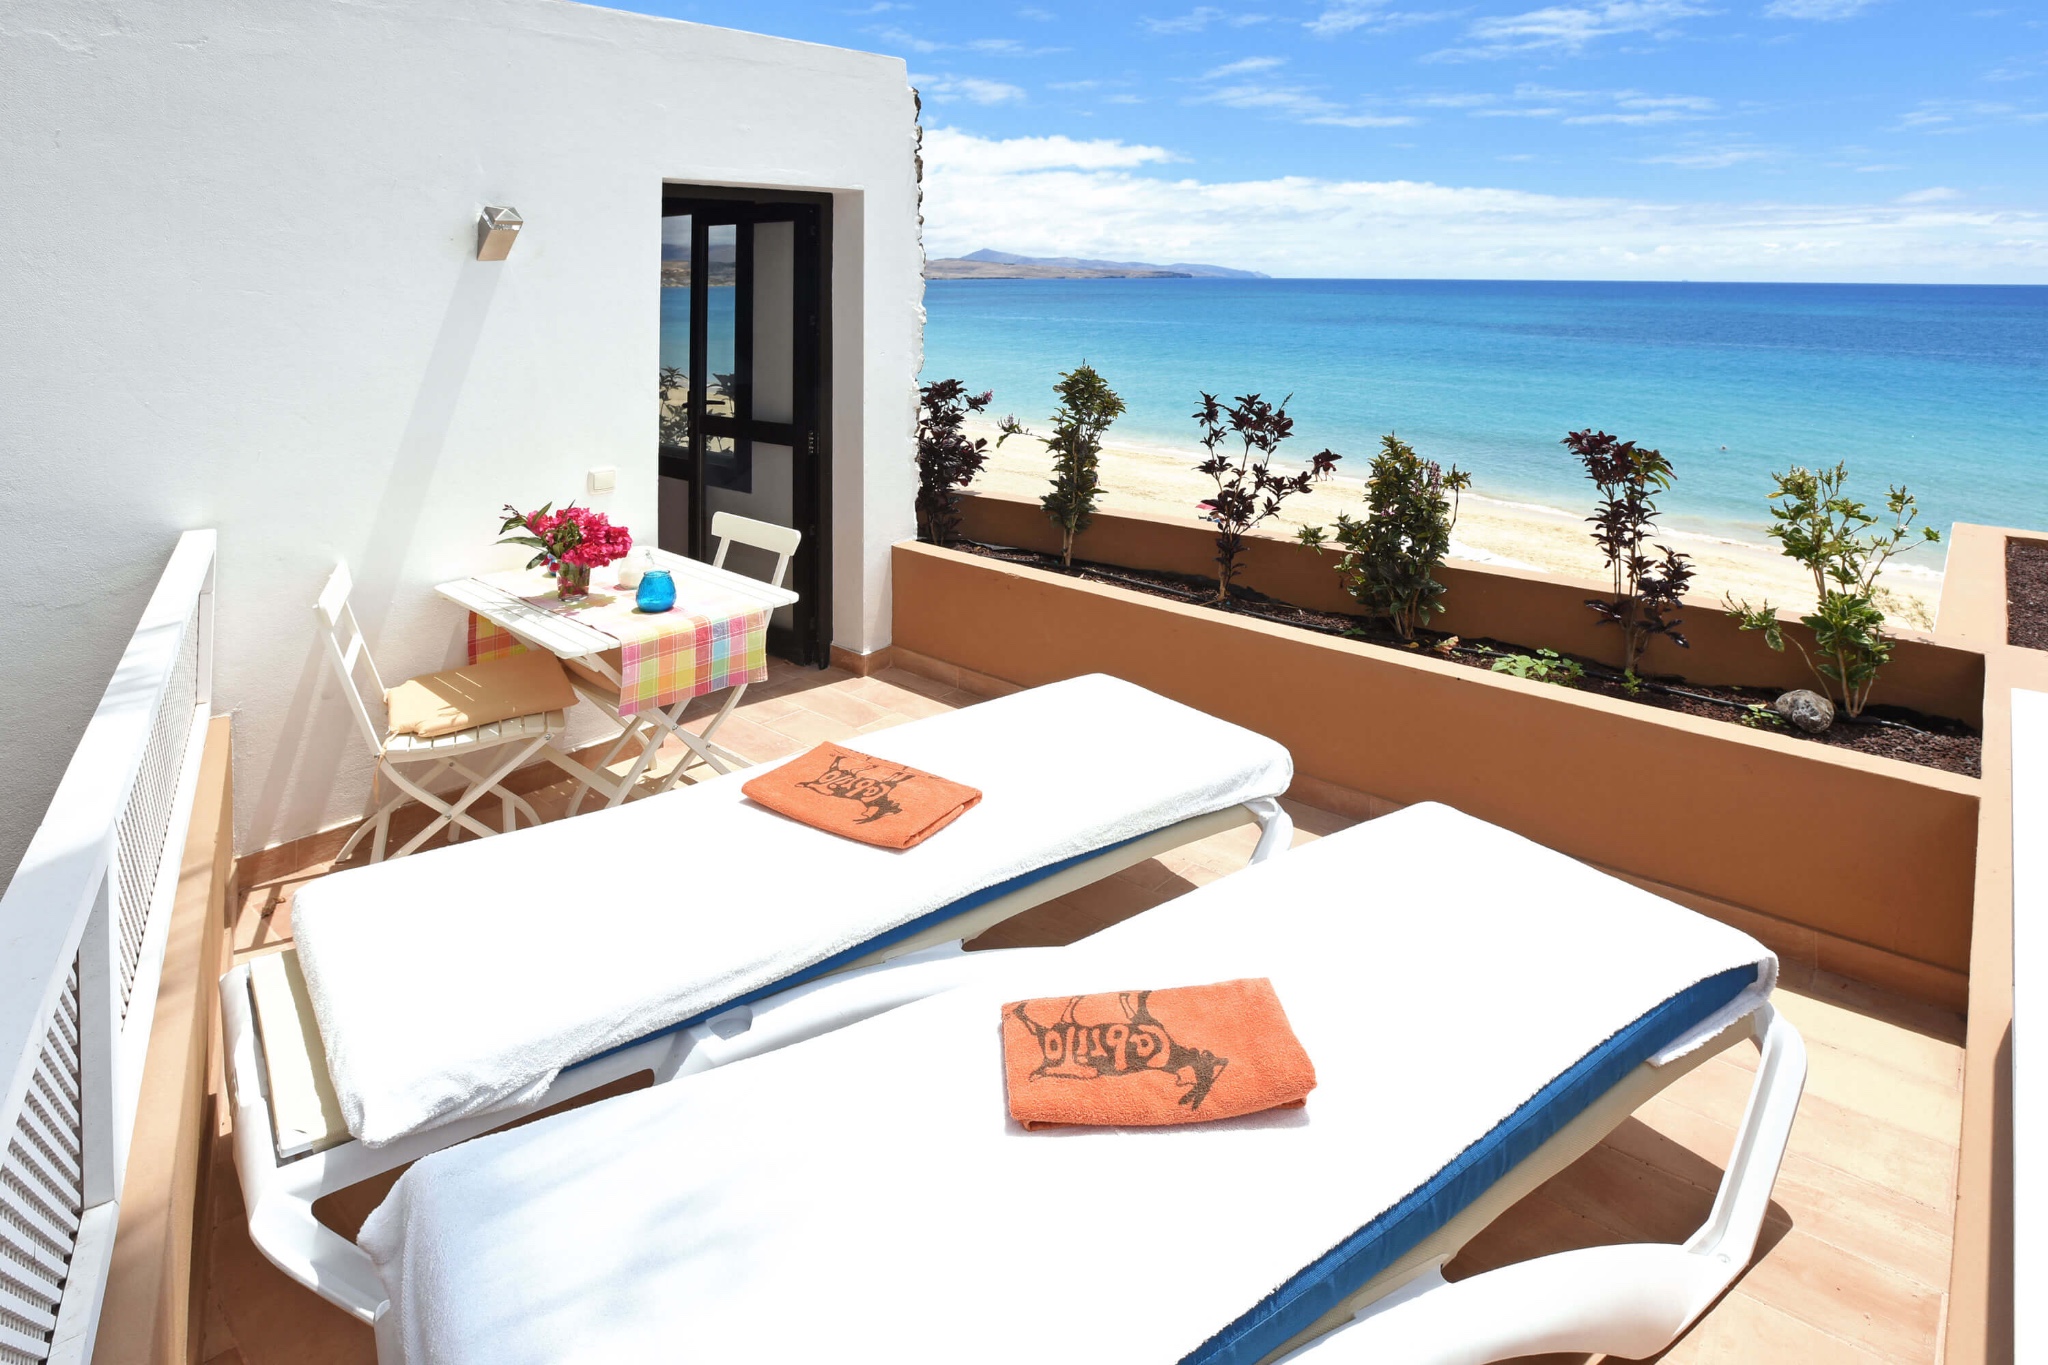 La maison de vacances pour 2 personnes est situé sur la plage de Costa Calma avec une vue imprenable sur la mer